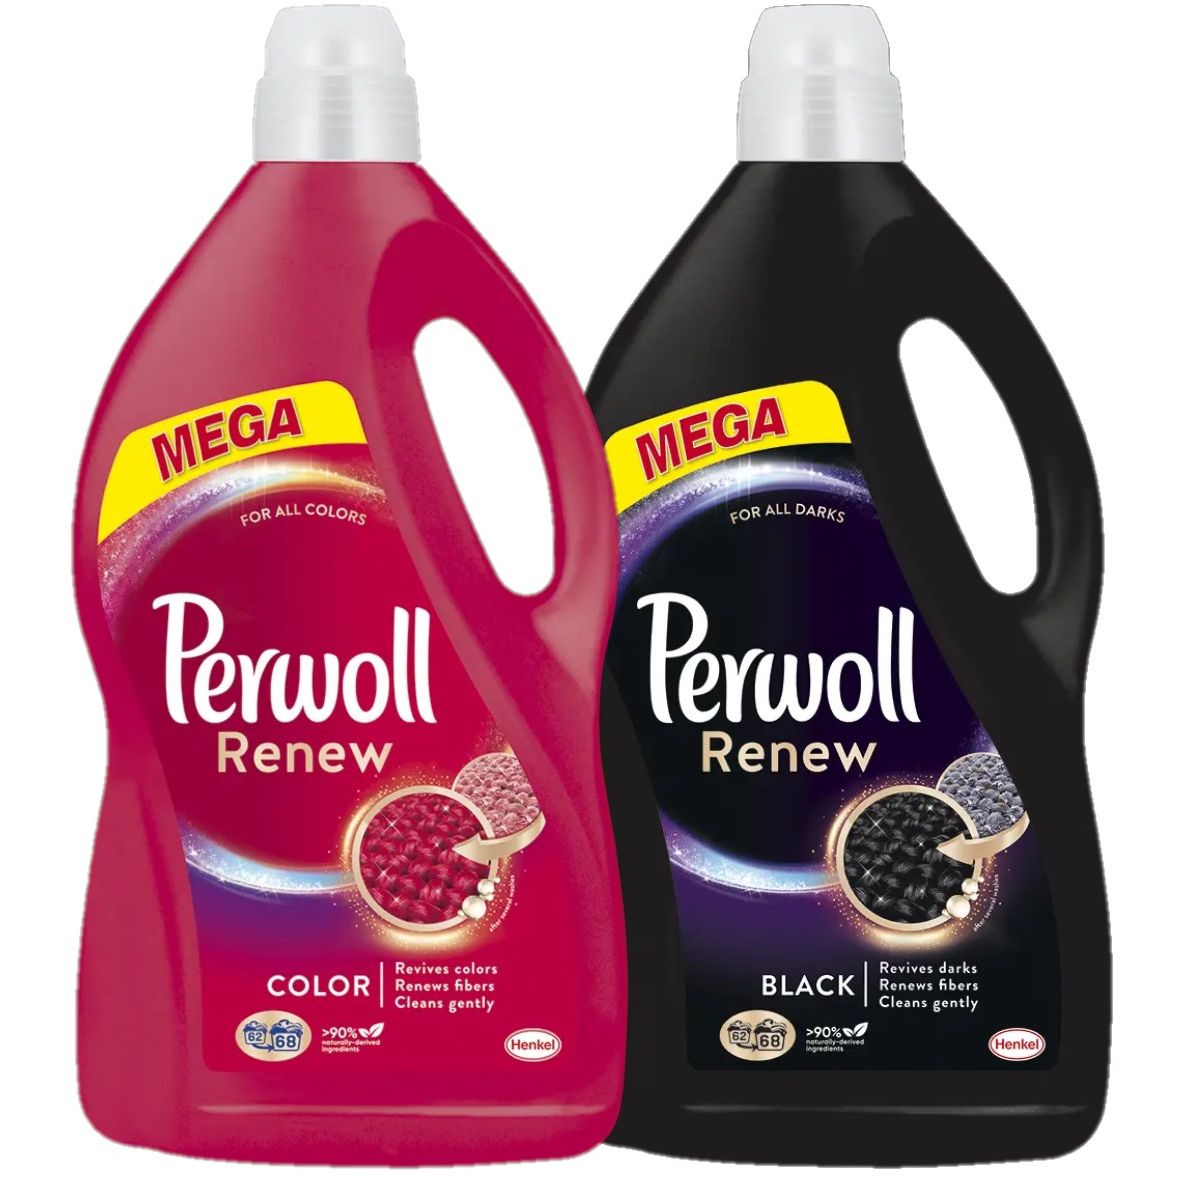 Засіб для делікатного прання Perwoll Renew для кольорових речей 3740 мл, 68 циклів прання + Засіб для делікатного прання Perwoll Renew для темних та чорних речей 3740 мл, 68 циклів прання - фото 1